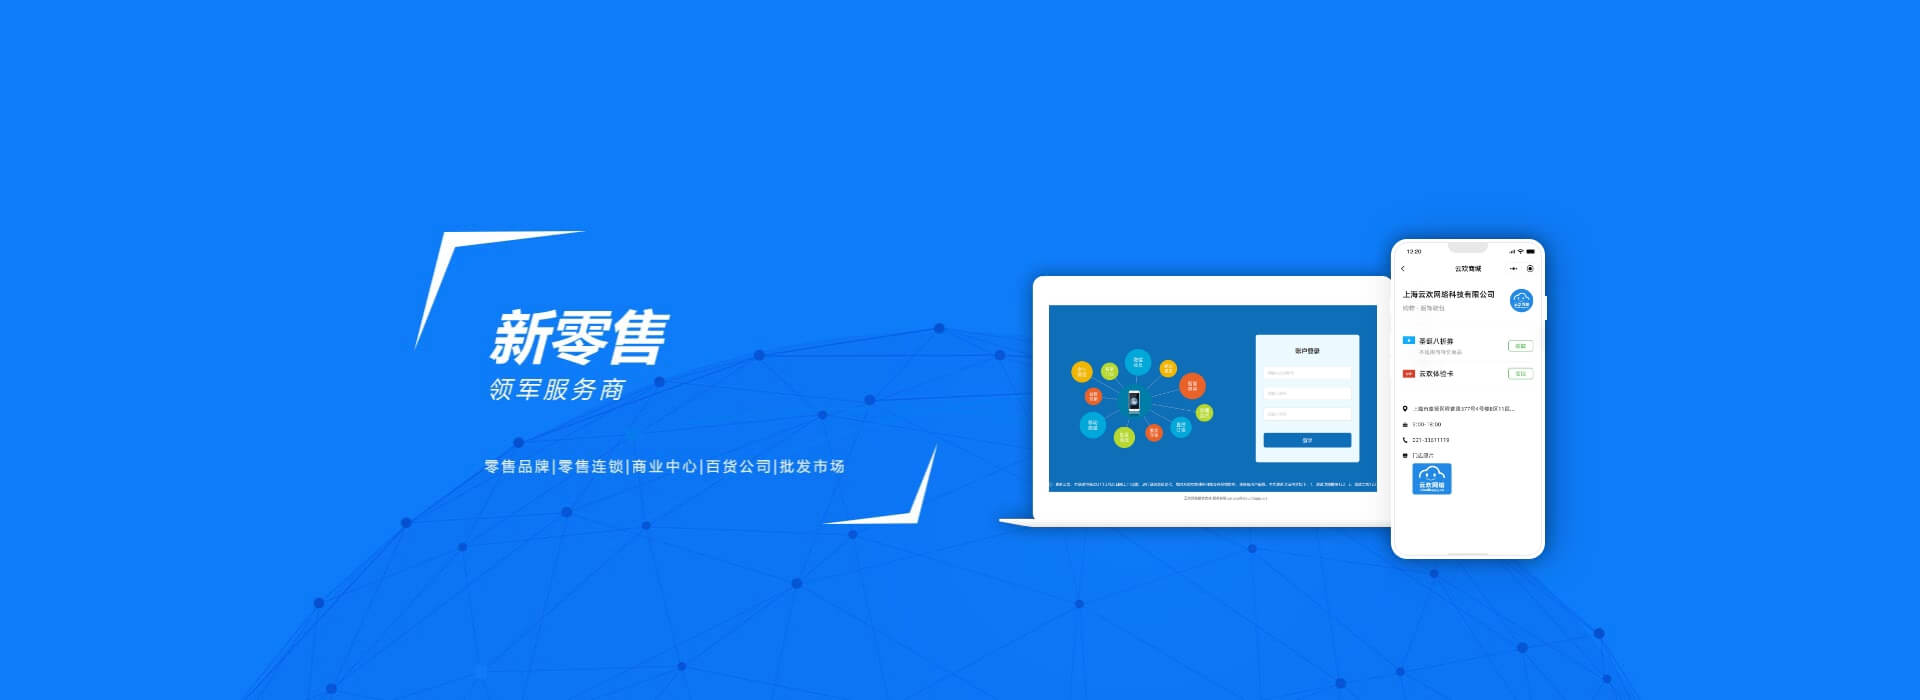 上海云欢网络科技有限公司